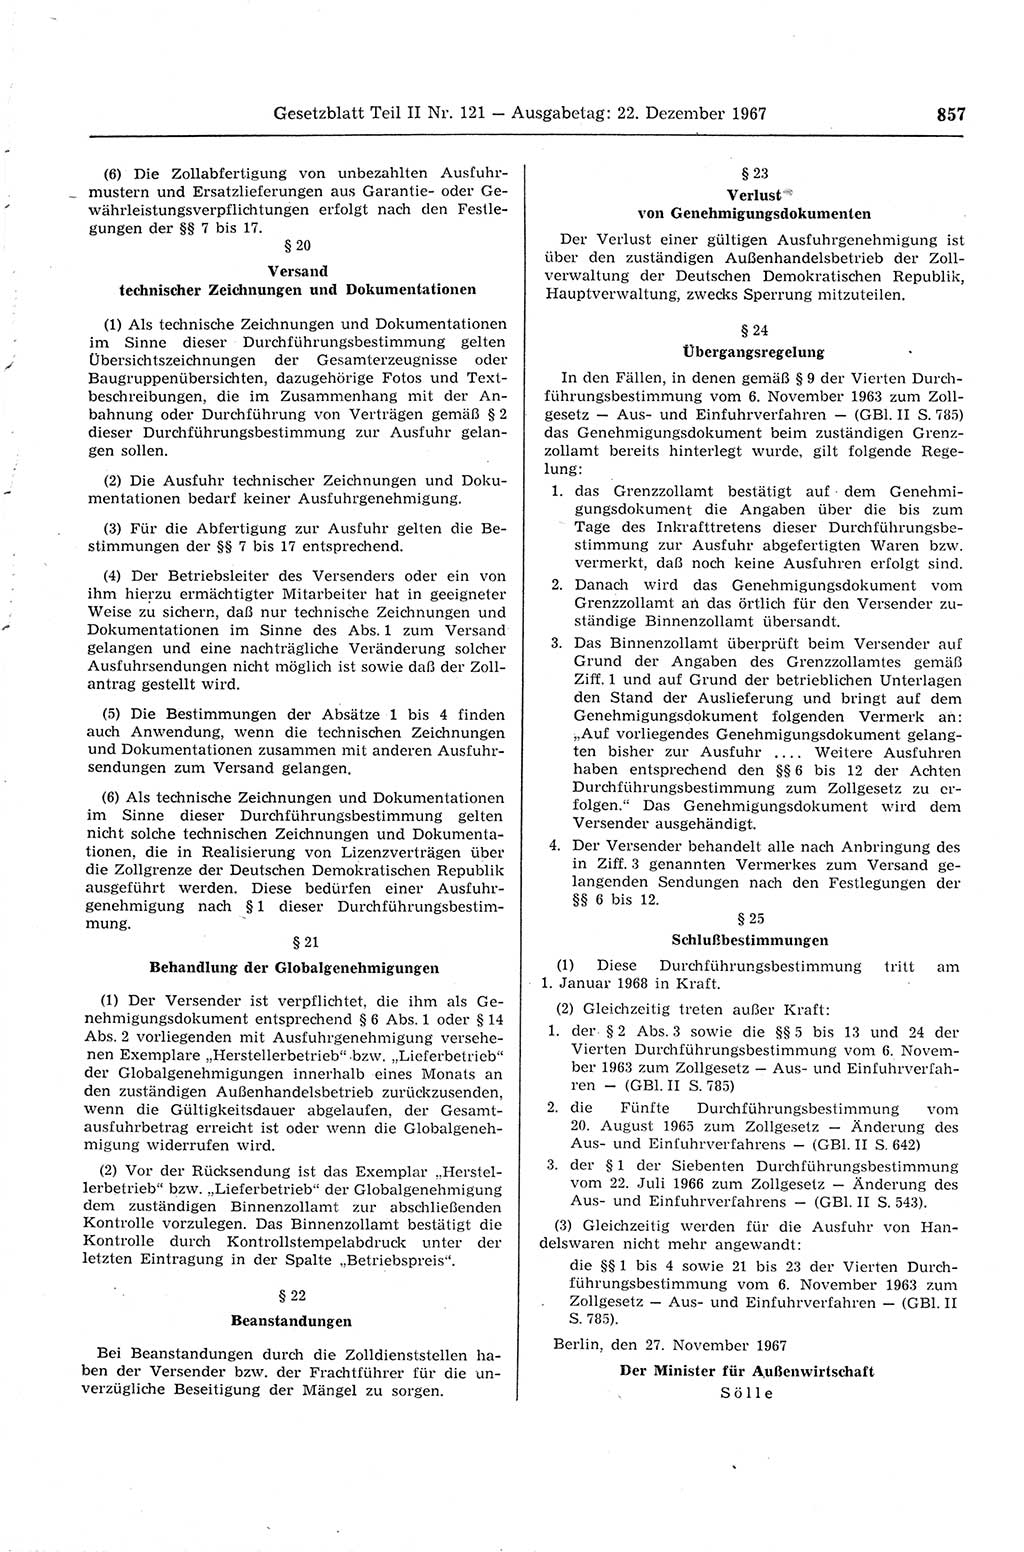 Gesetzblatt (GBl.) der Deutschen Demokratischen Republik (DDR) Teil ⅠⅠ 1967, Seite 857 (GBl. DDR ⅠⅠ 1967, S. 857)